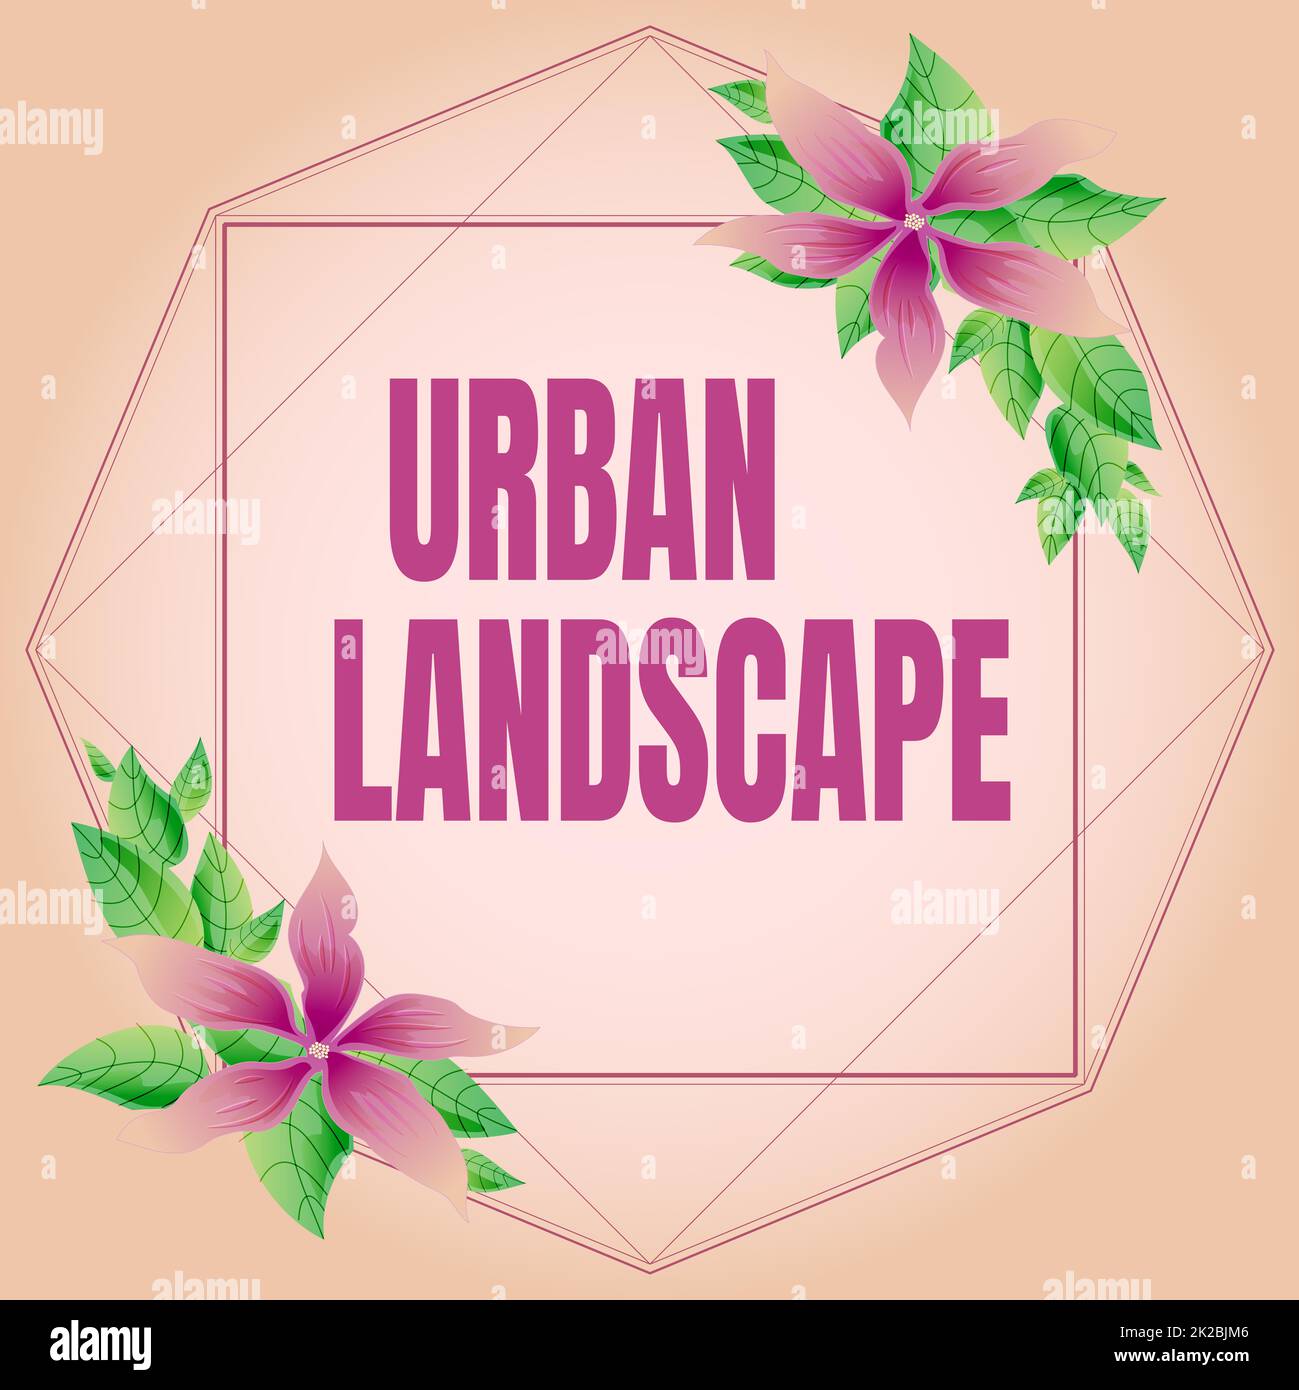 Text mit Inspiration Urban Landscape, Word für Bilder, die Szenen in einer Stadt erfassen, die ein riesiger Rahmen sein kann, der mit bunten Blumen und verziert ist Stockfoto